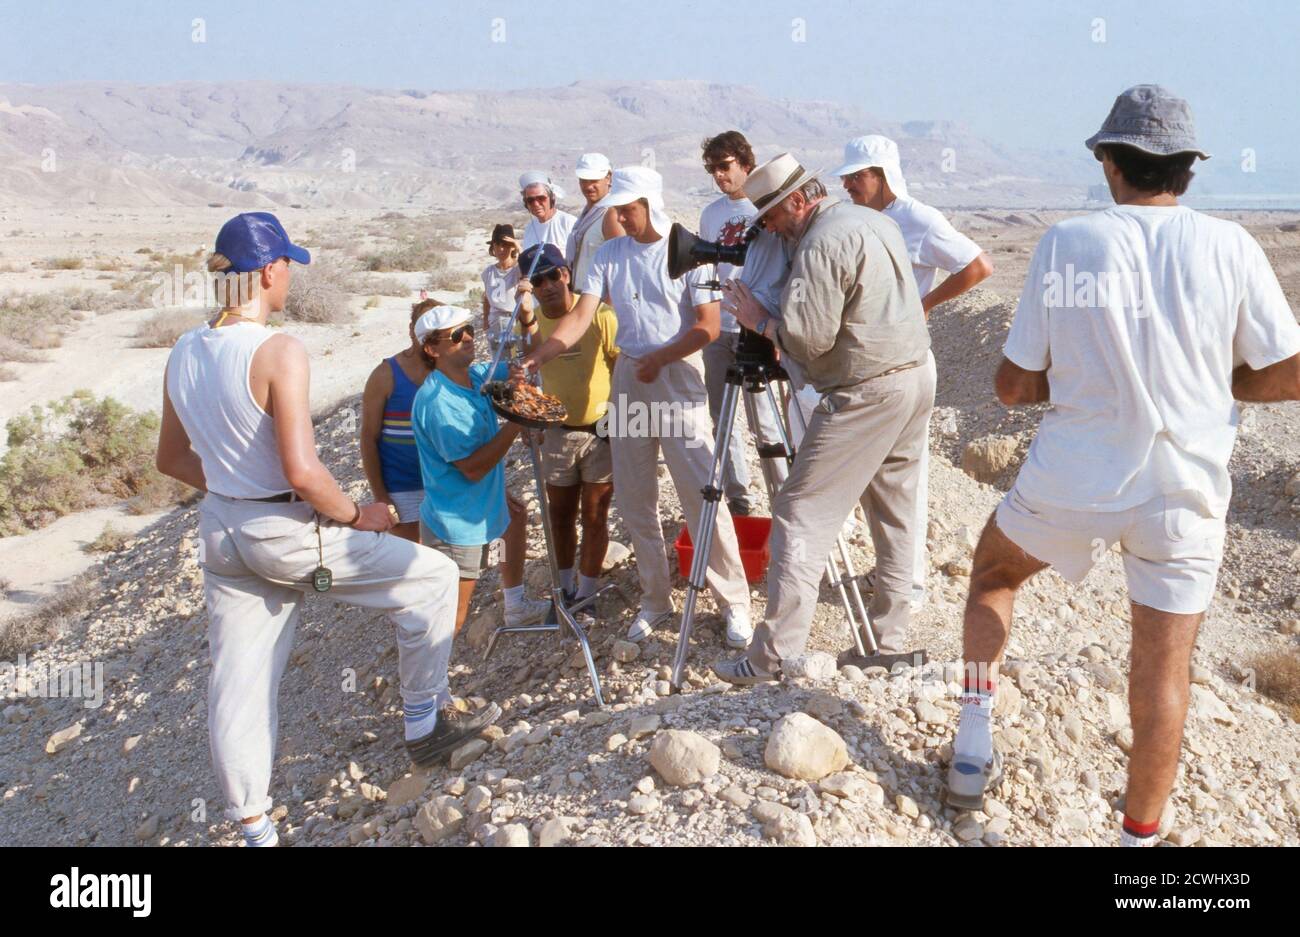 Diese Drombuschs, Fernsehserie, Deutschland 1983 - 1994, Dreharbeiten in Israele 1988, Darsteller und Crew in der Wüste Negev Foto Stock